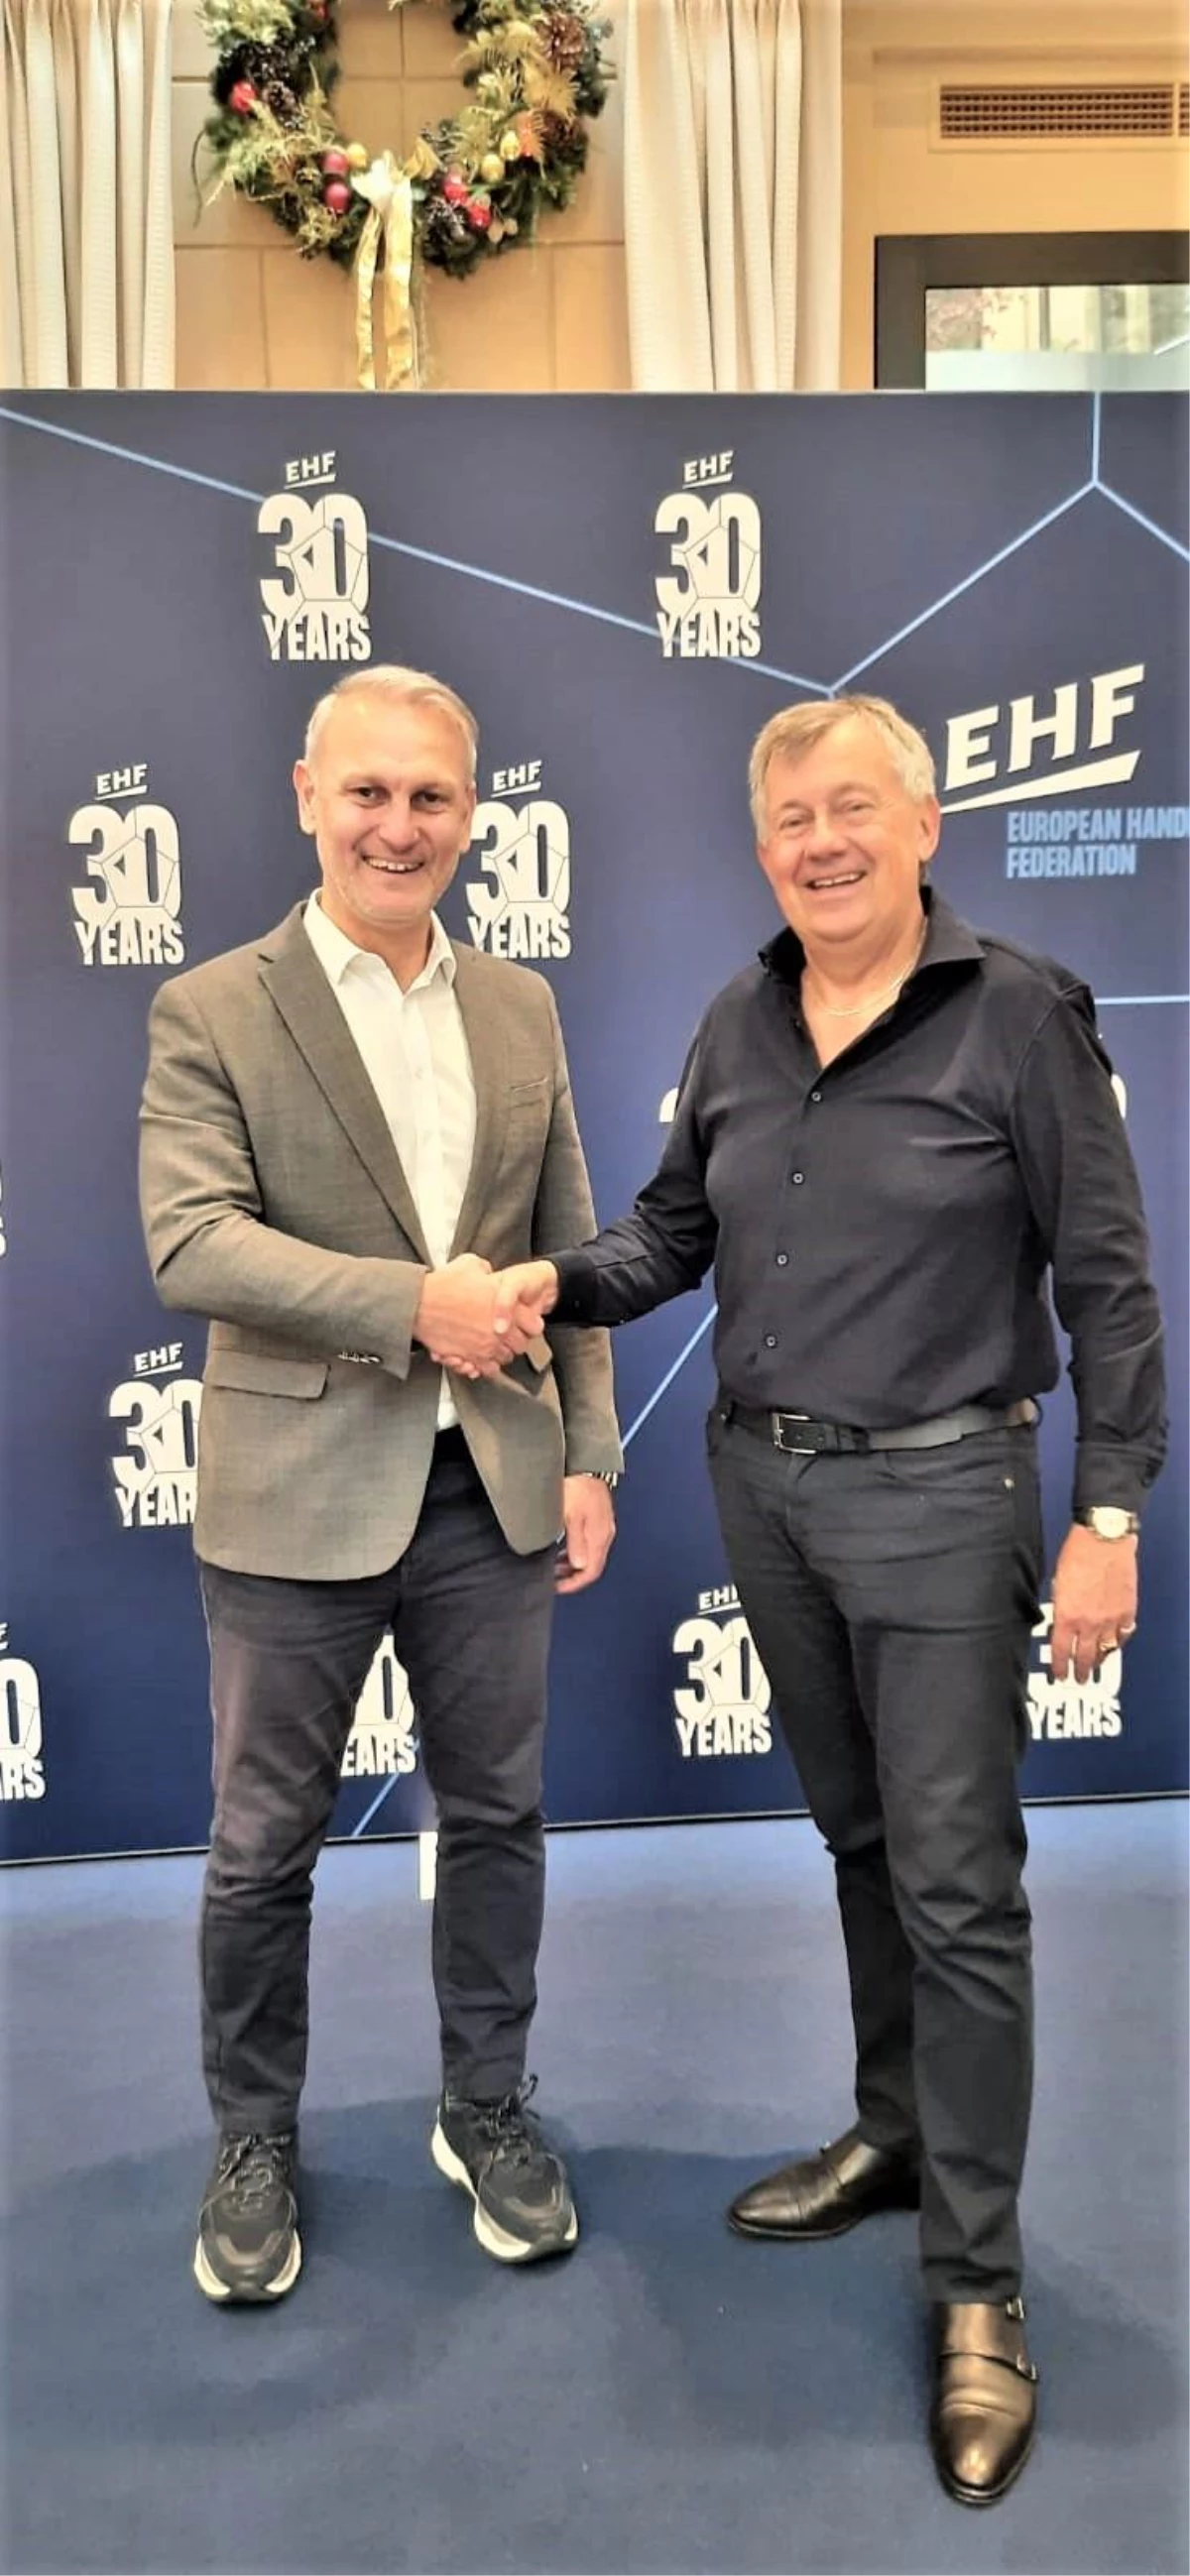 THF Başkanı Uğur Kılıç, EHF Başkanı Wiederer ile bir araya geldi